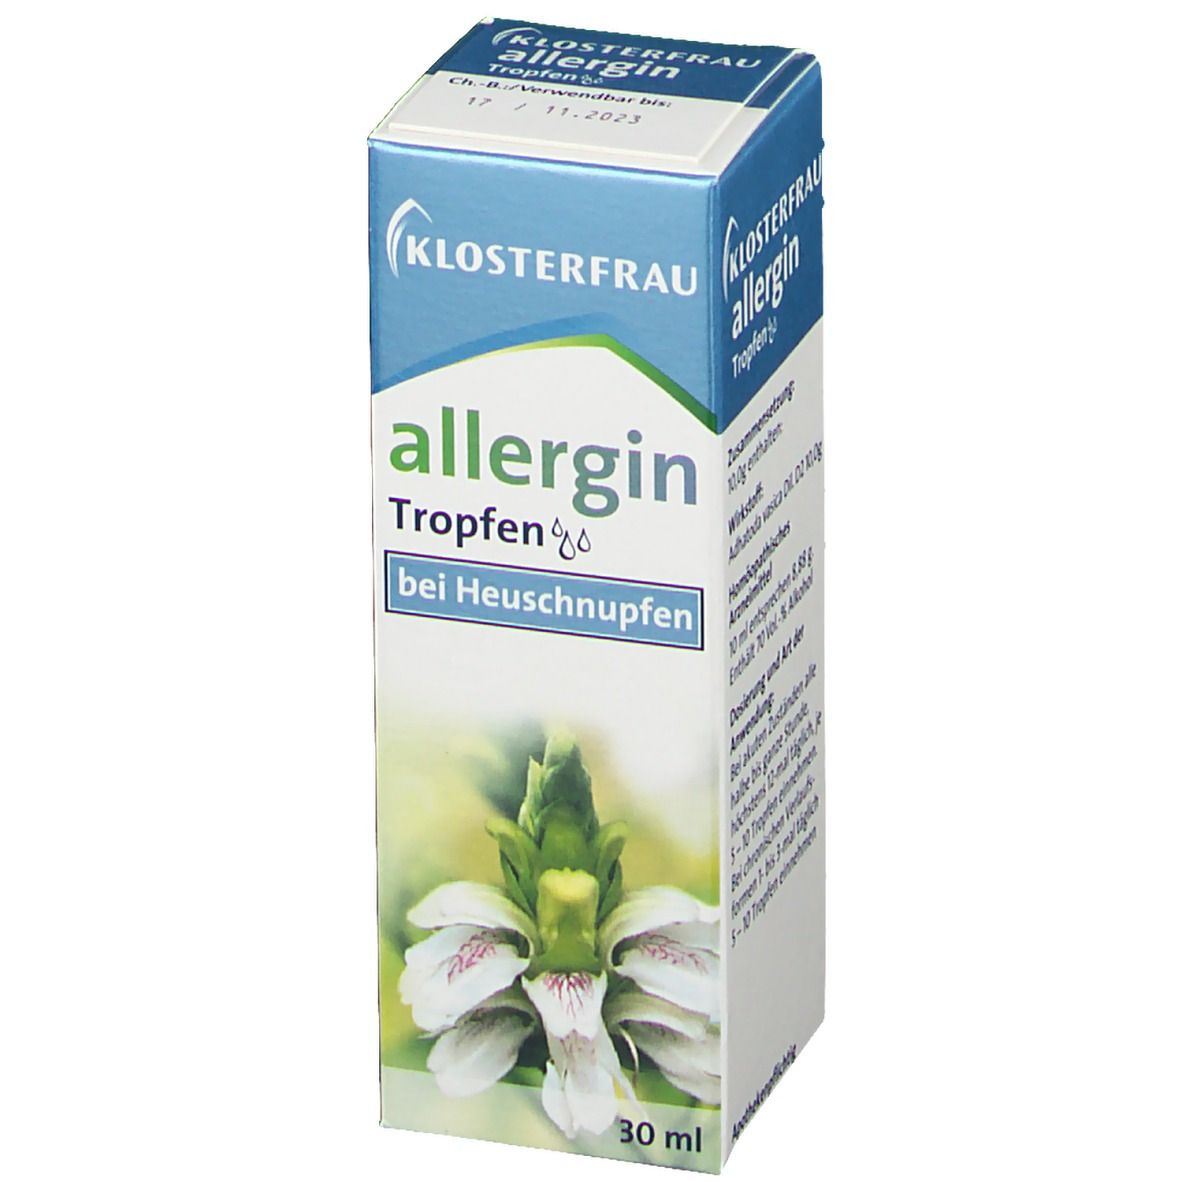 KLOSTERFRAU allergin Tropfen bei Heuschnupfen